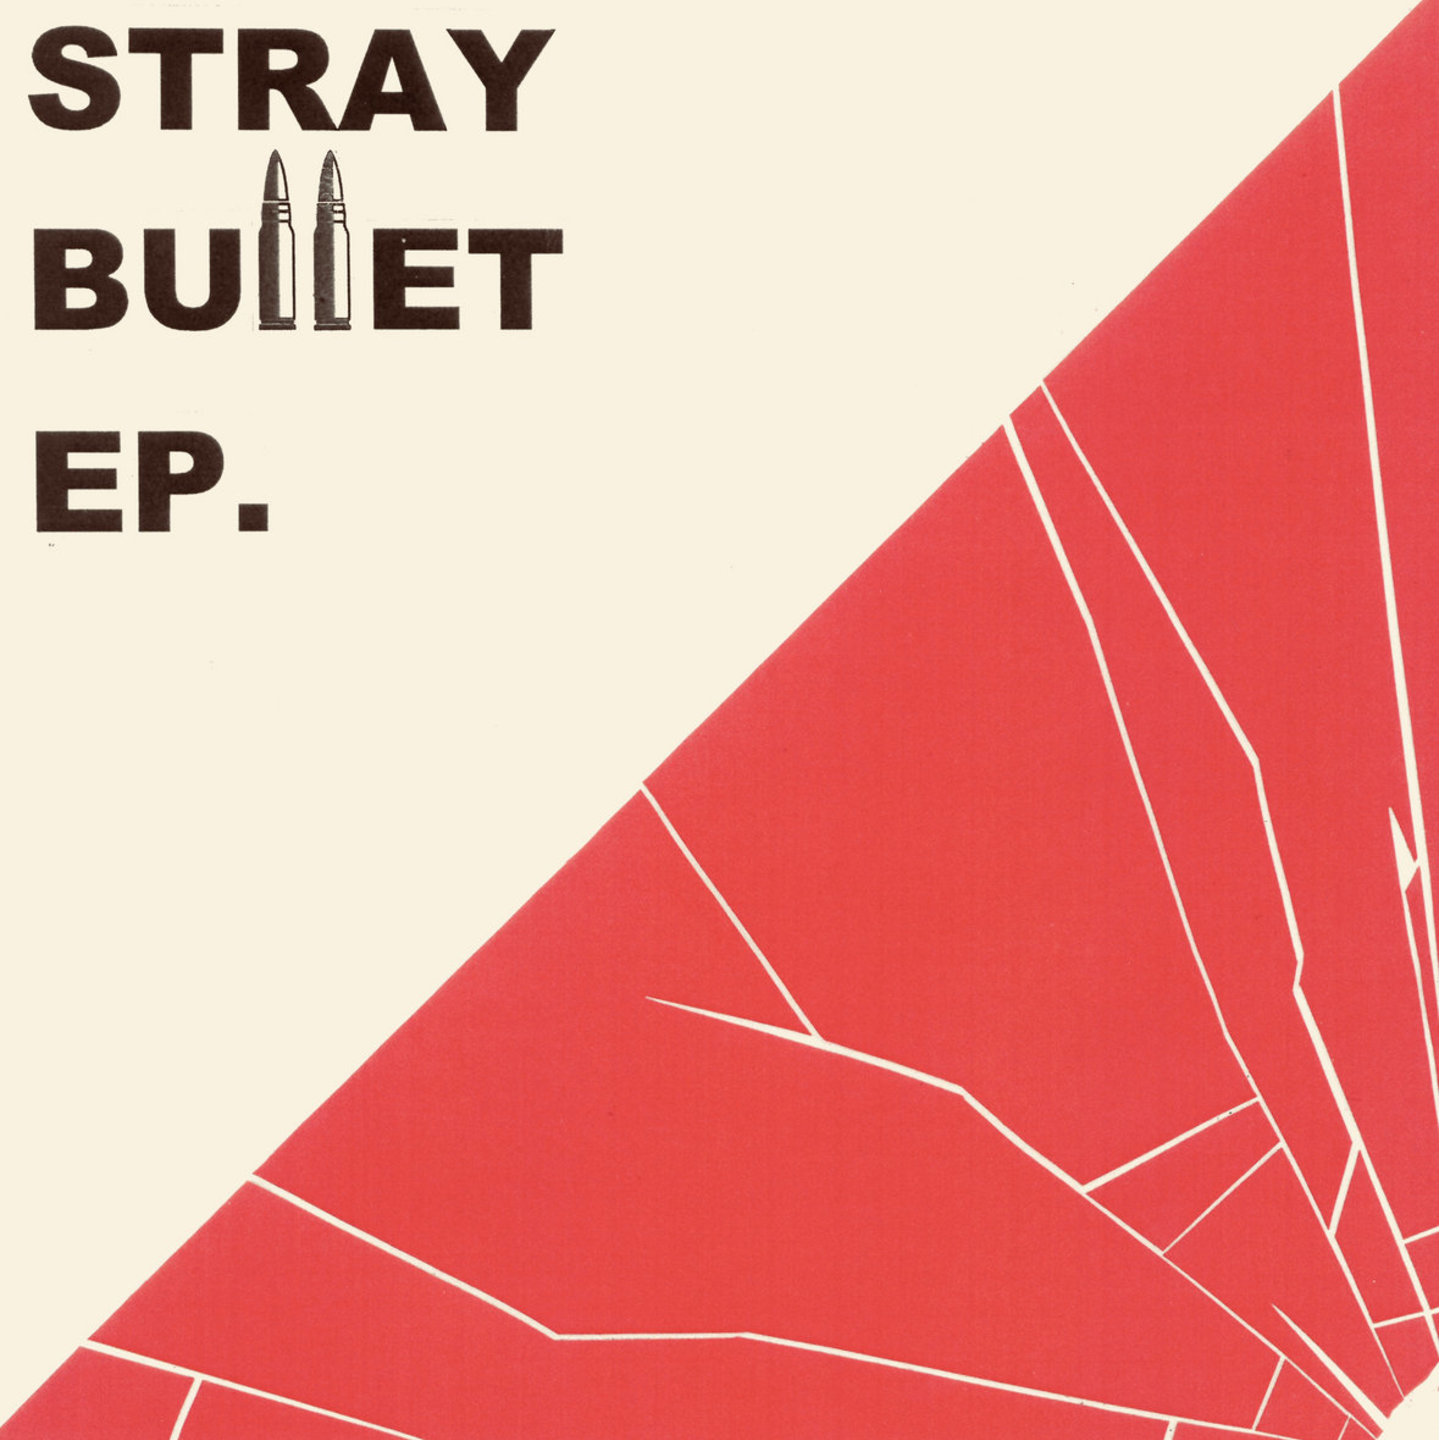 STRAY BULLET - Stray Bullet 7"